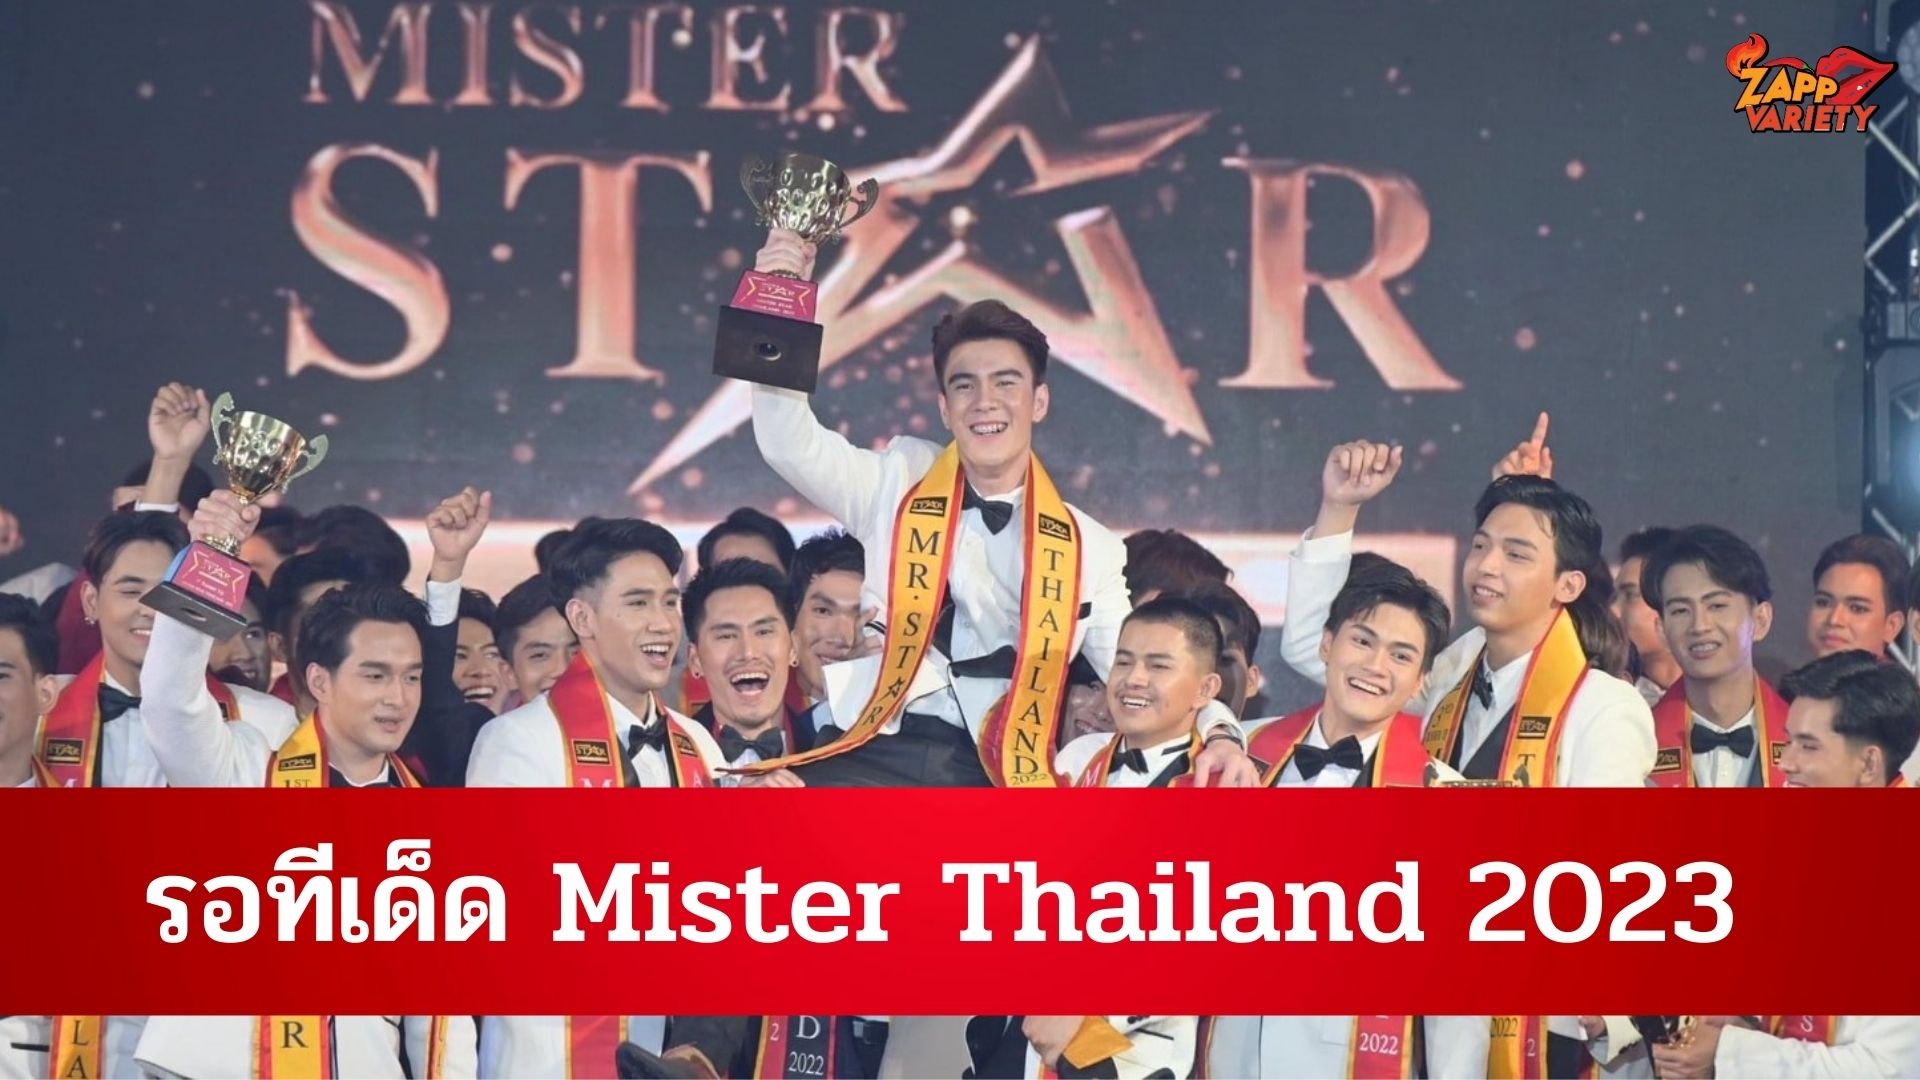 รอทีเด็ด Mister Thailand 2023 รวมหนุ่มหล่อเยอะ แซ่บนัวสุดของประเทศไทย 